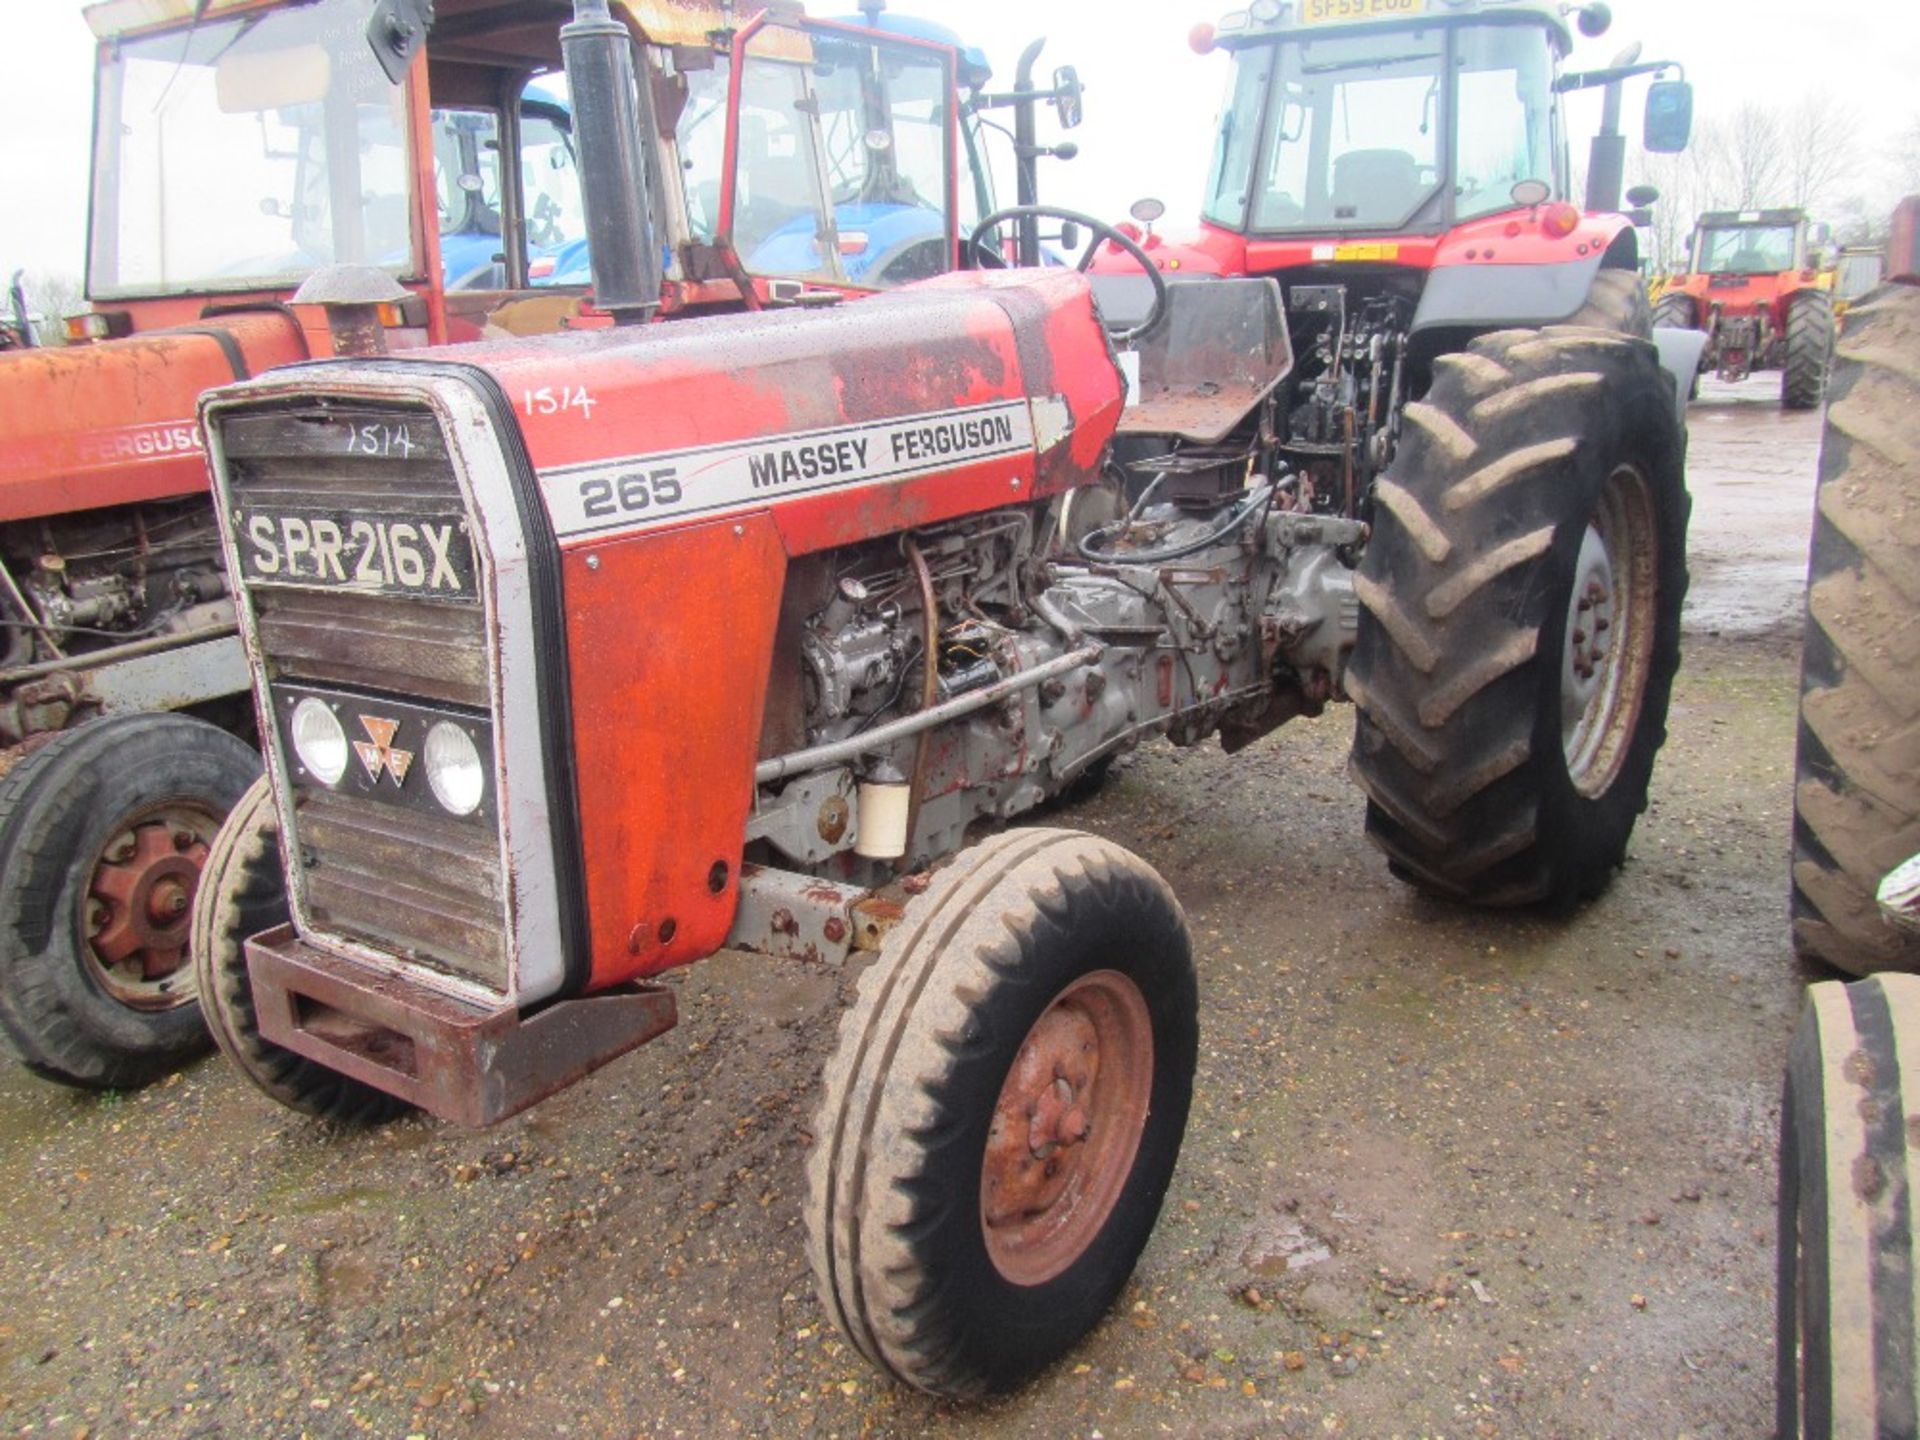 Massey Ferguson 265 Tractor c/w Std Gearbox Reg No SPR 216X Ser No 186518